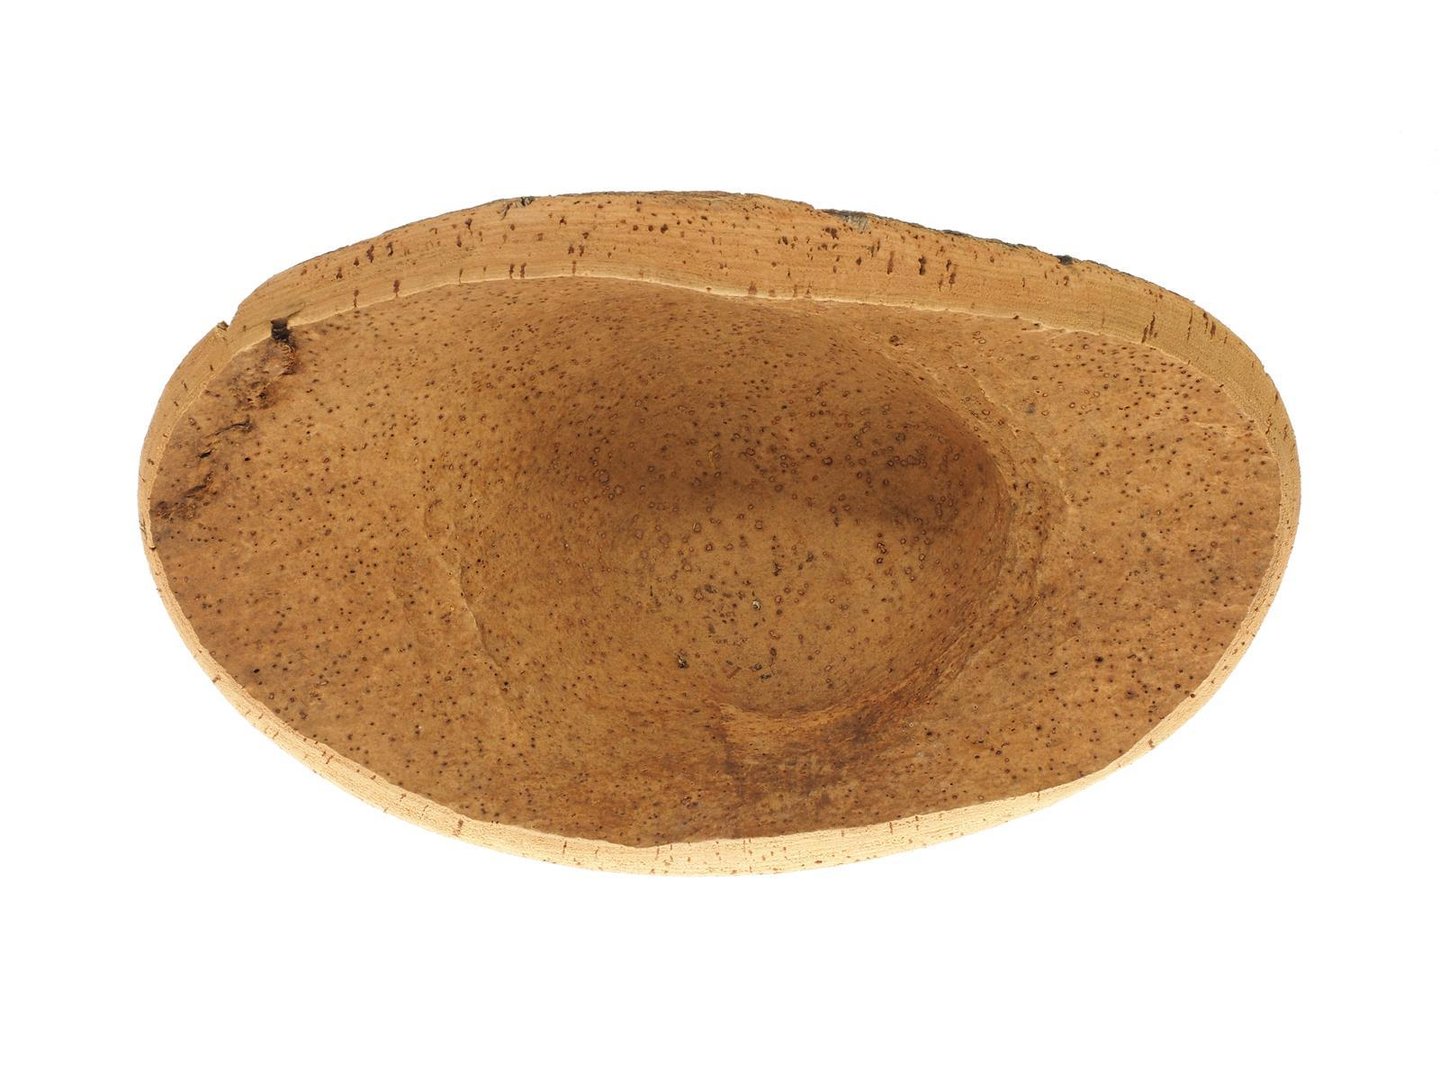 7320.2 10 Cork bowl small Natural cork bowl